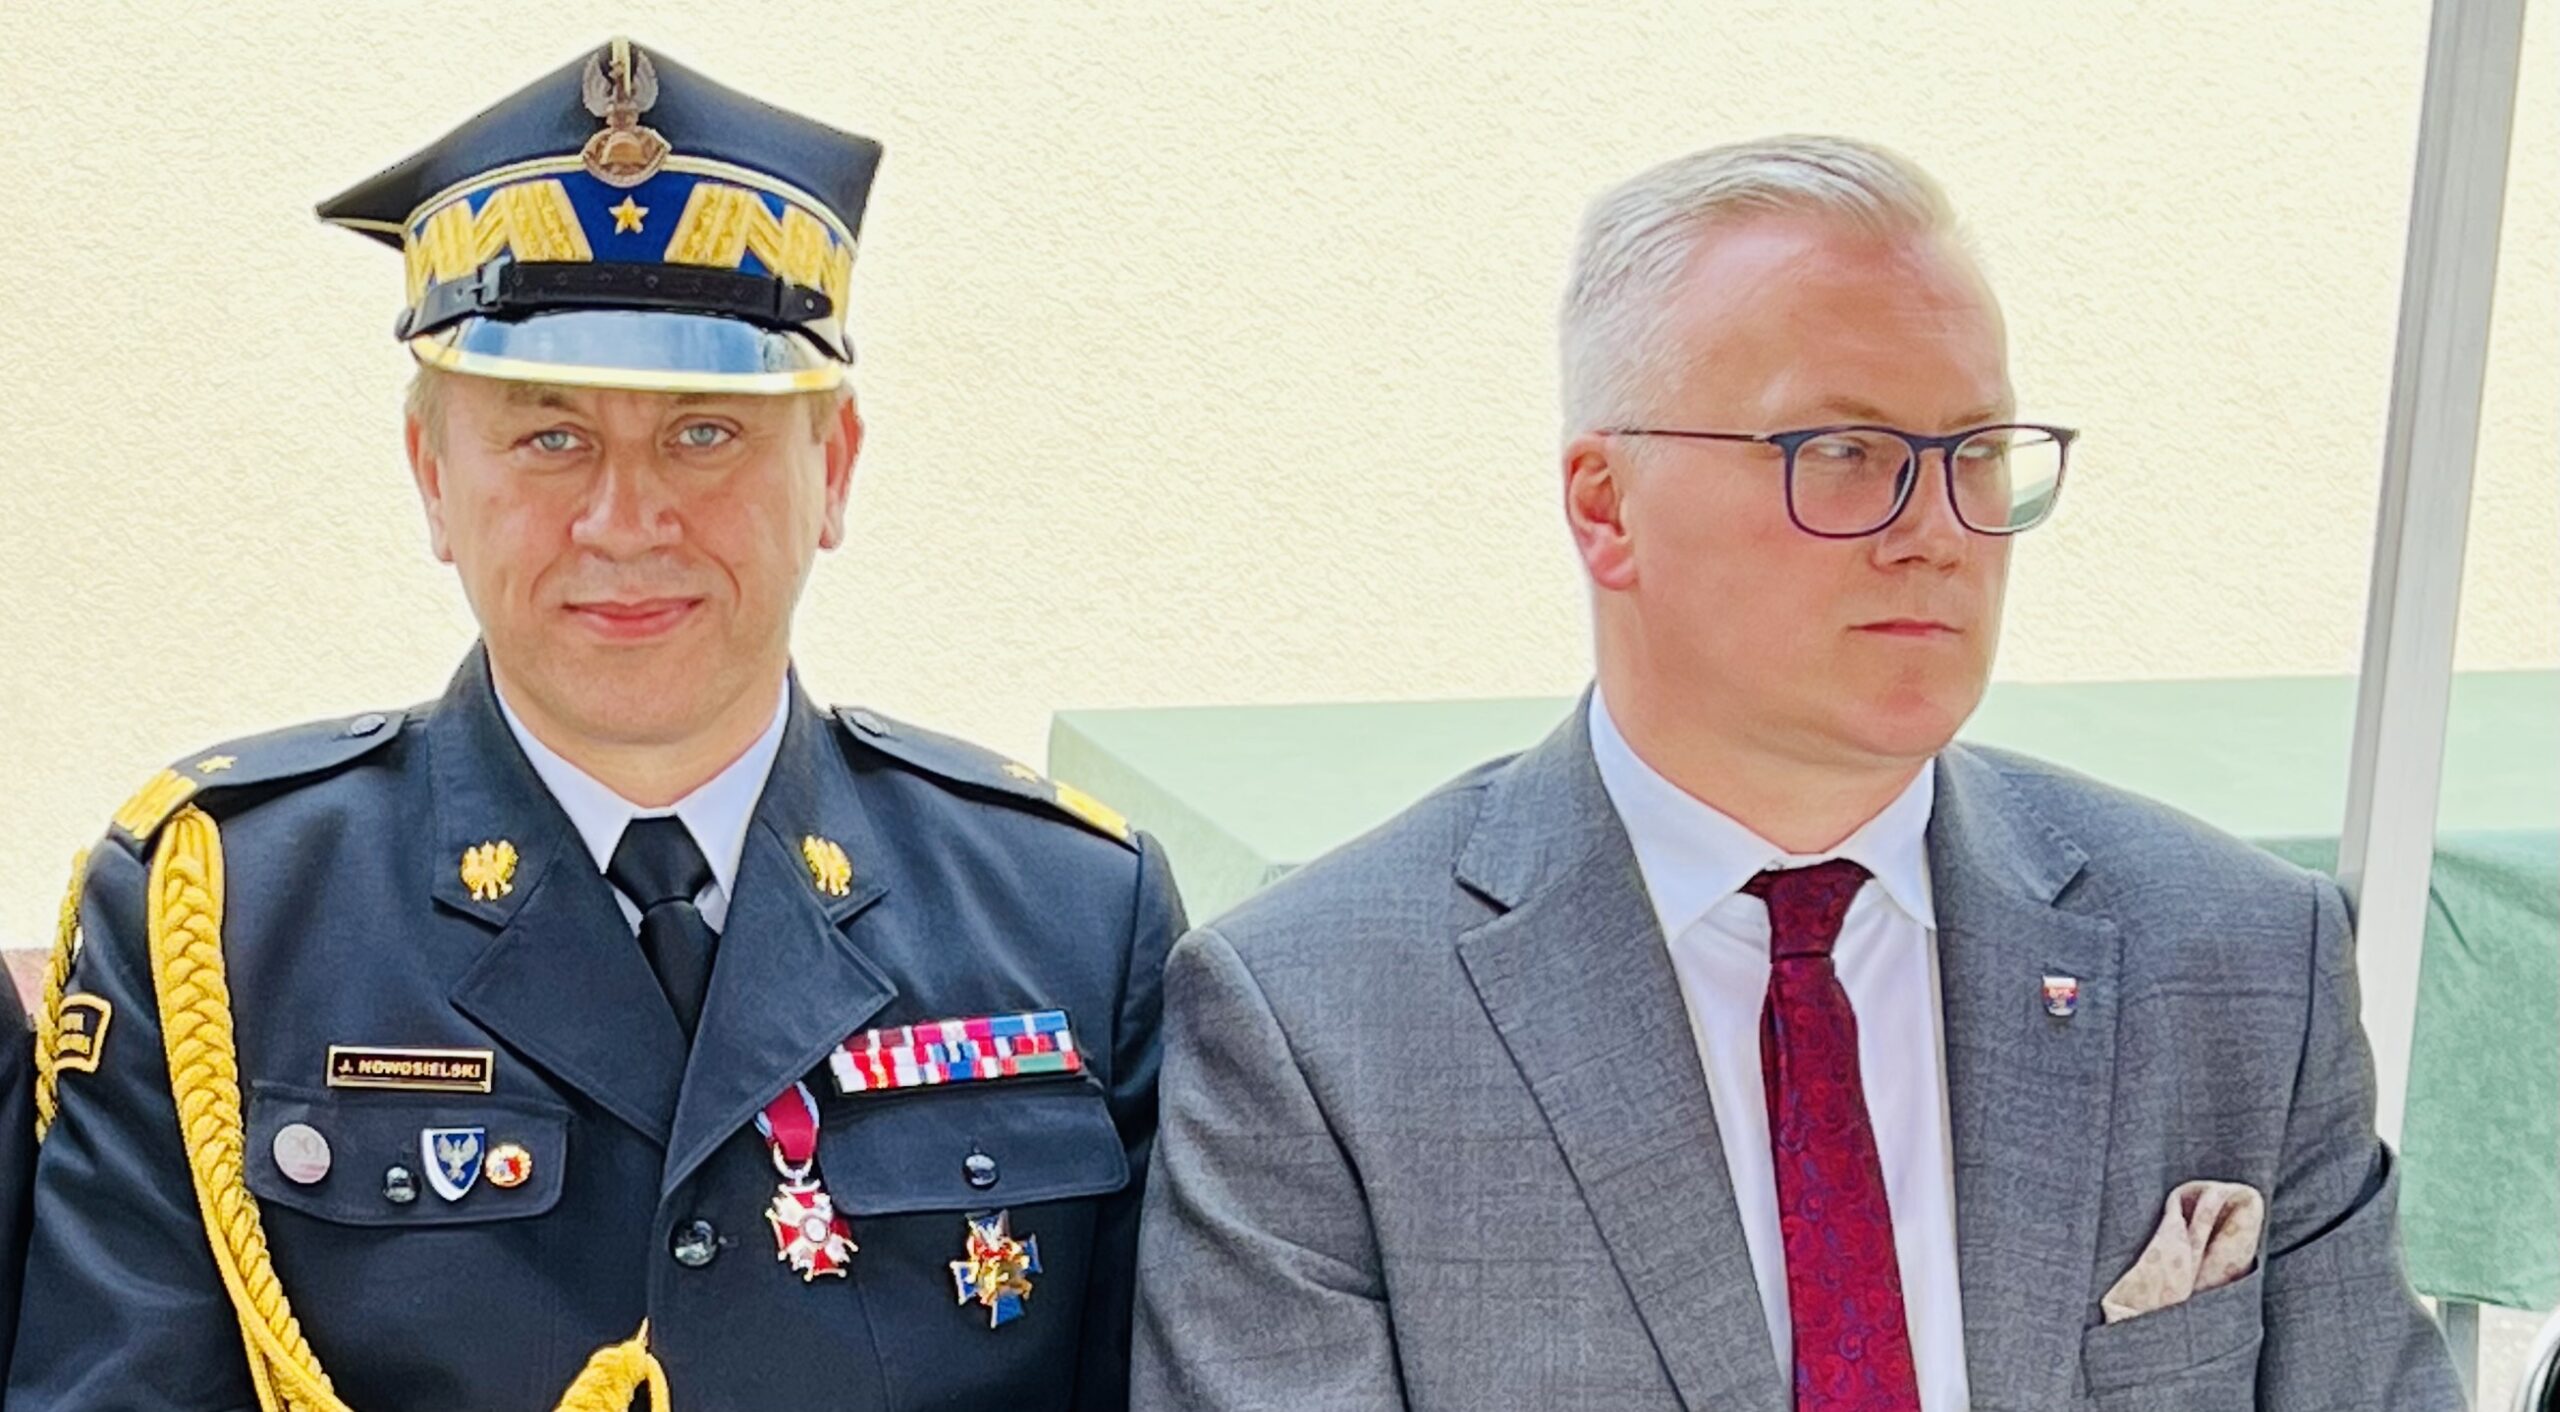 STRAŻ POŻARNA. Minister MSWiA odwołał ze stanowiska szefa mazowieckich strażaków!  